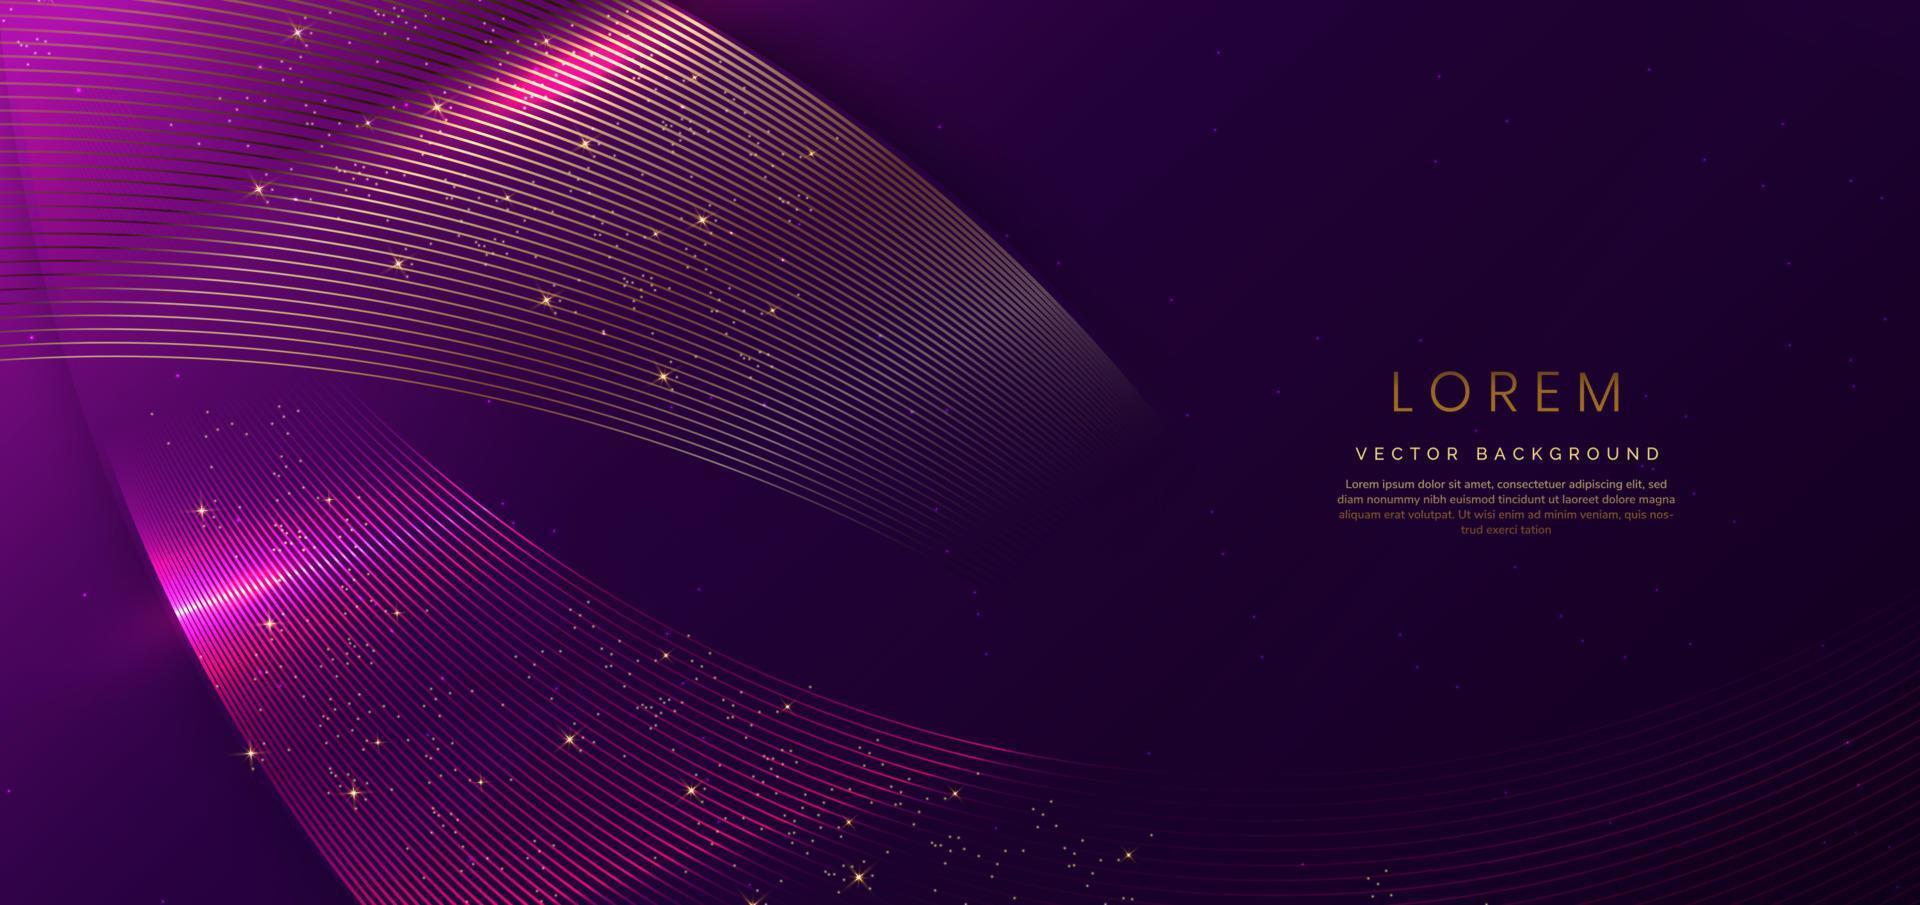 abstrakte luxuskurve leuchtende linien auf dunkelviolettem hintergrund. Vorlage Premium-Award-Design. vektor